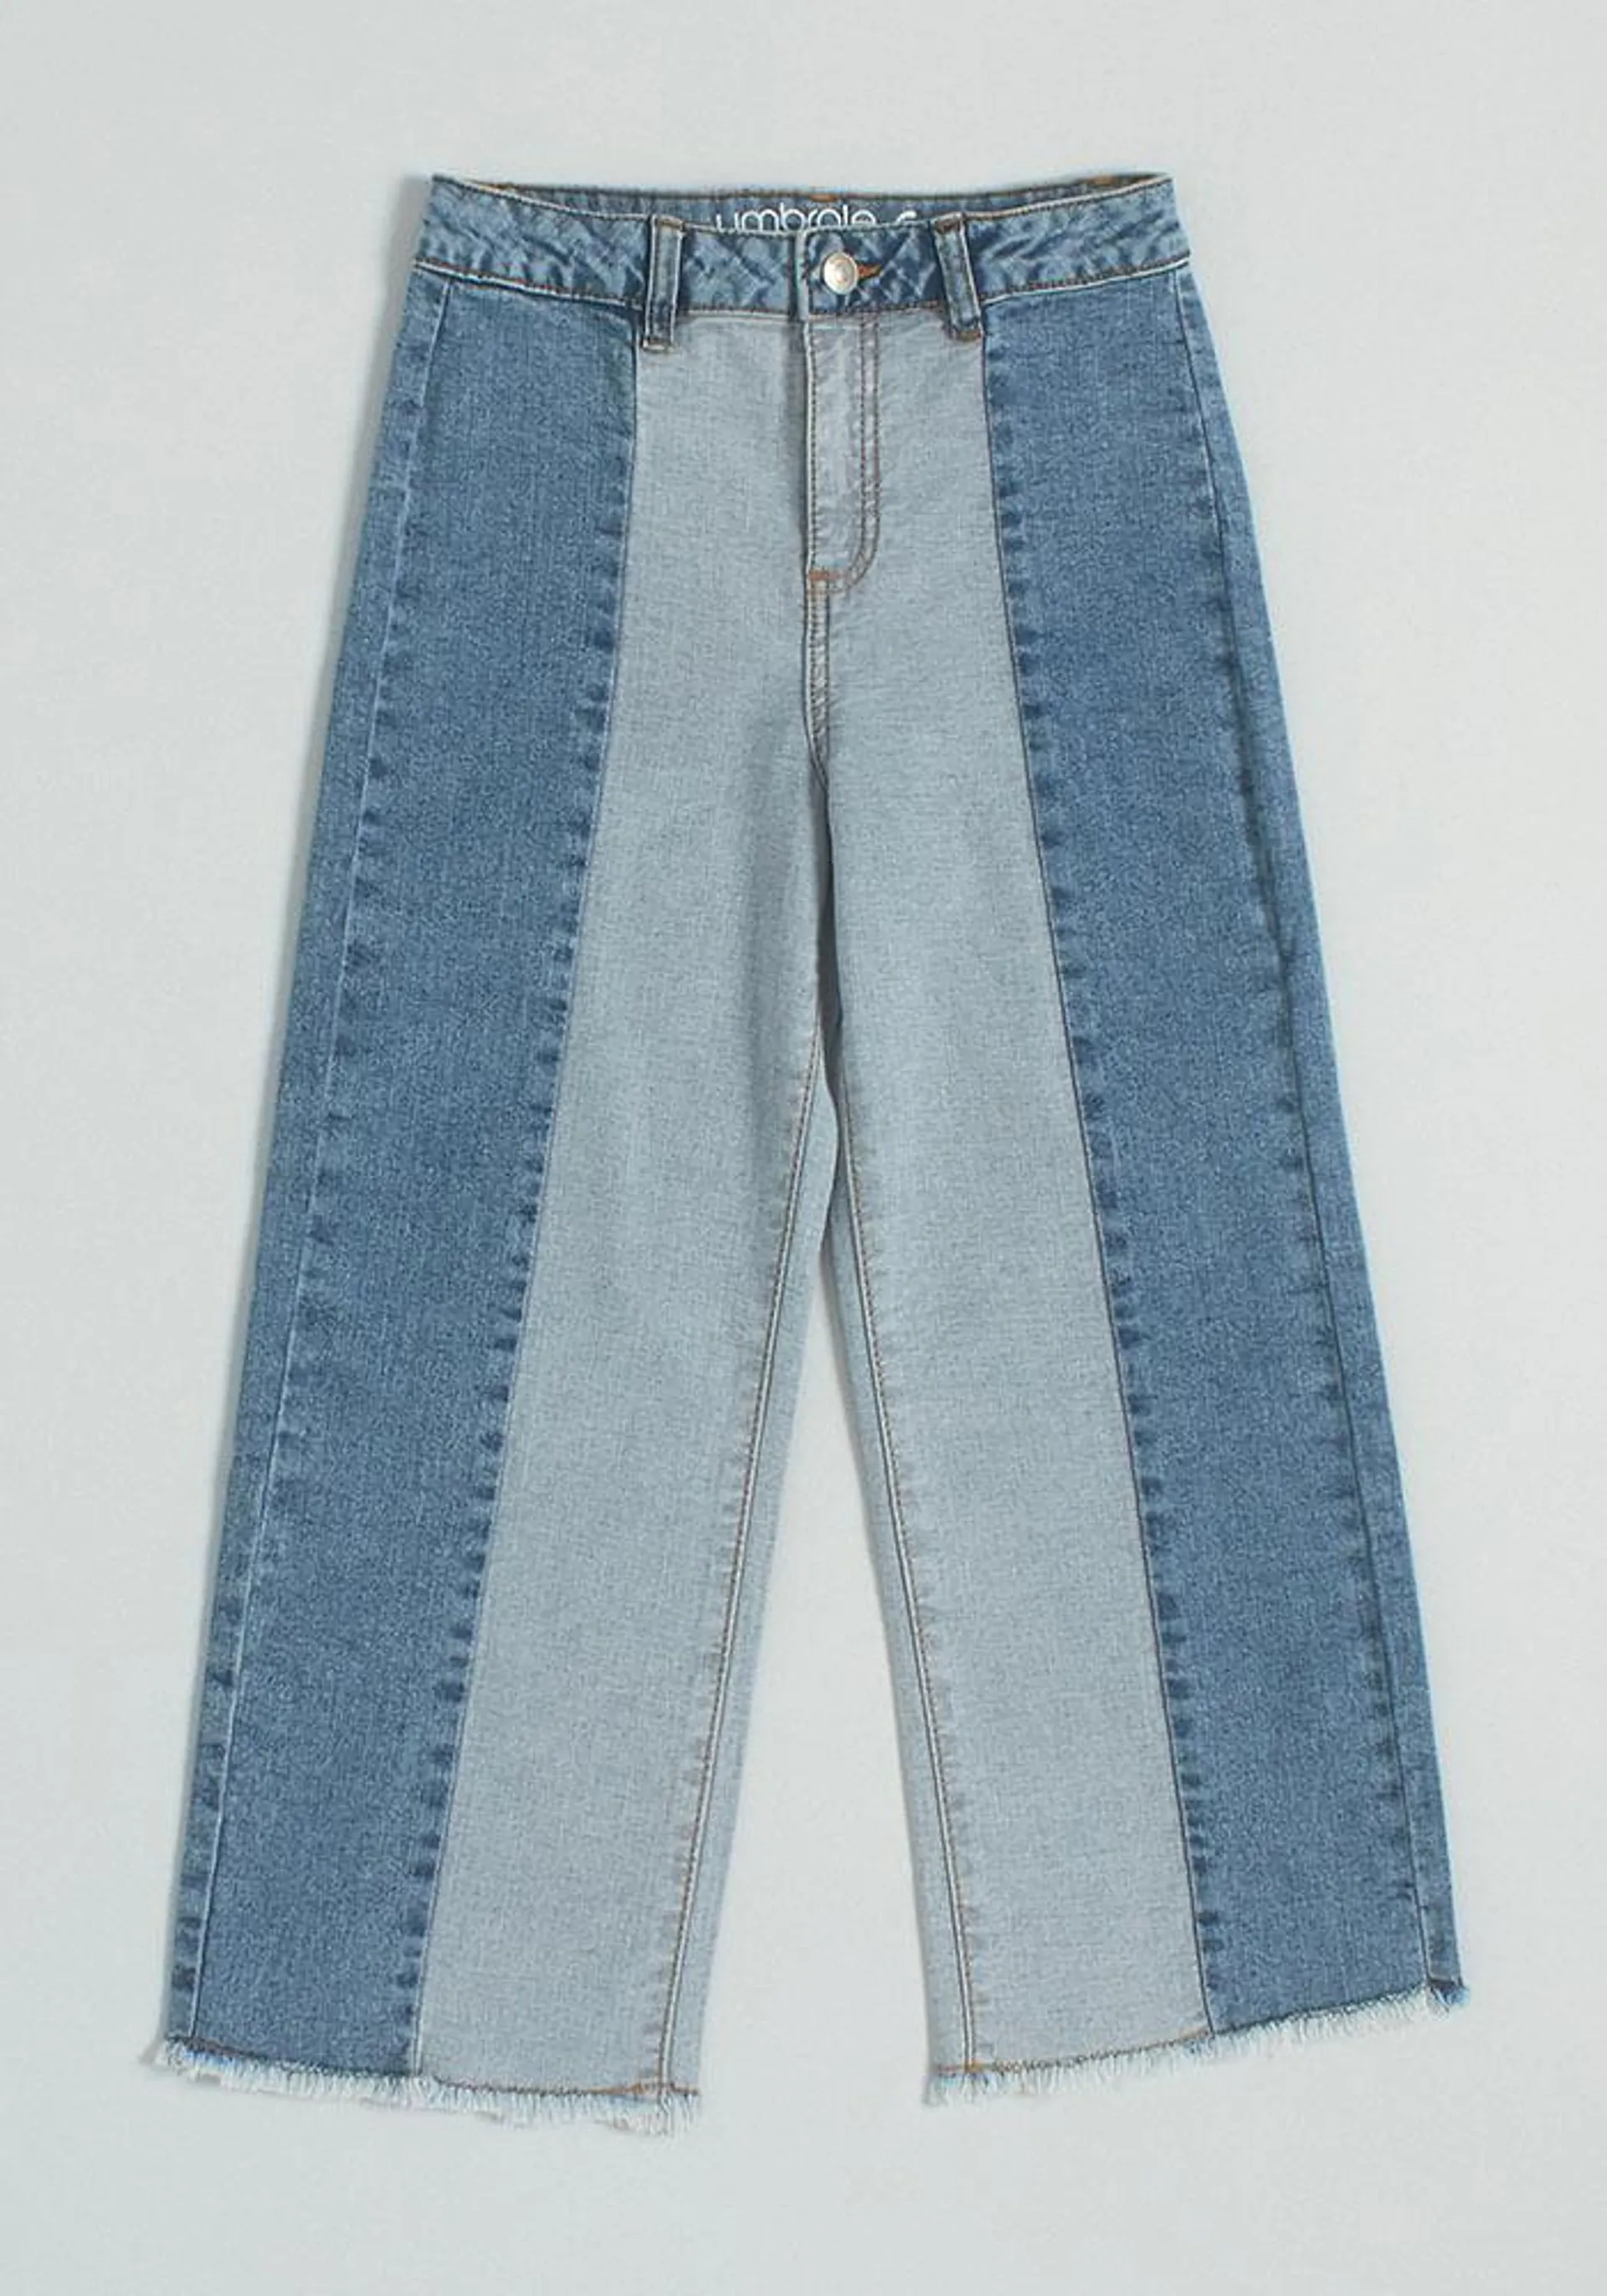 Jeans Marine Con Dos Colores De Denim Y Bordados Wide Leg 98% Cotton 2% Spandex Denim 9.5oz